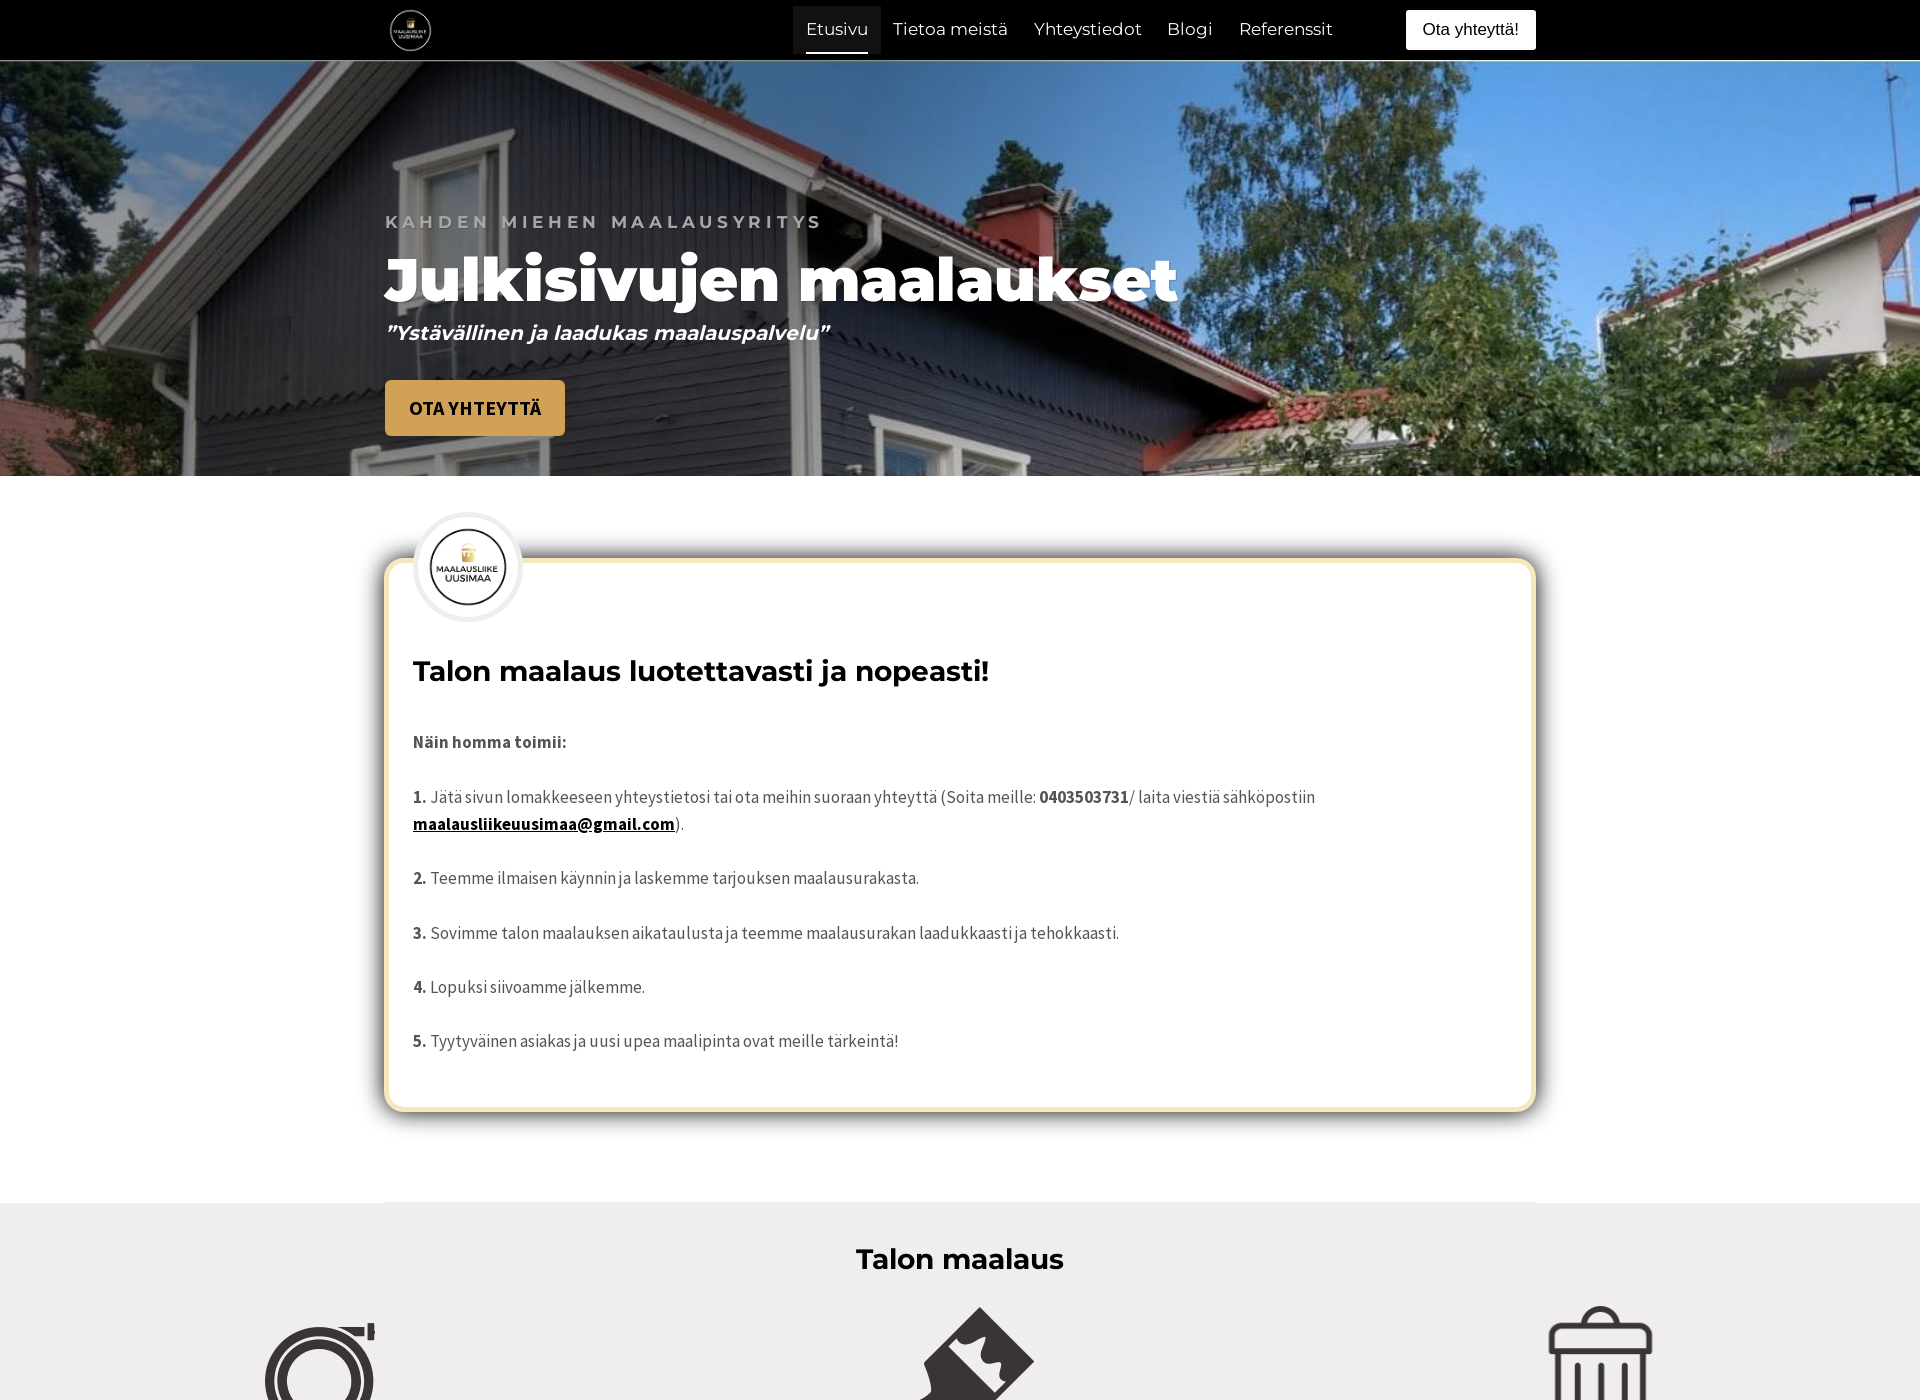 Screenshot for maalausliikeuusimaa.fi